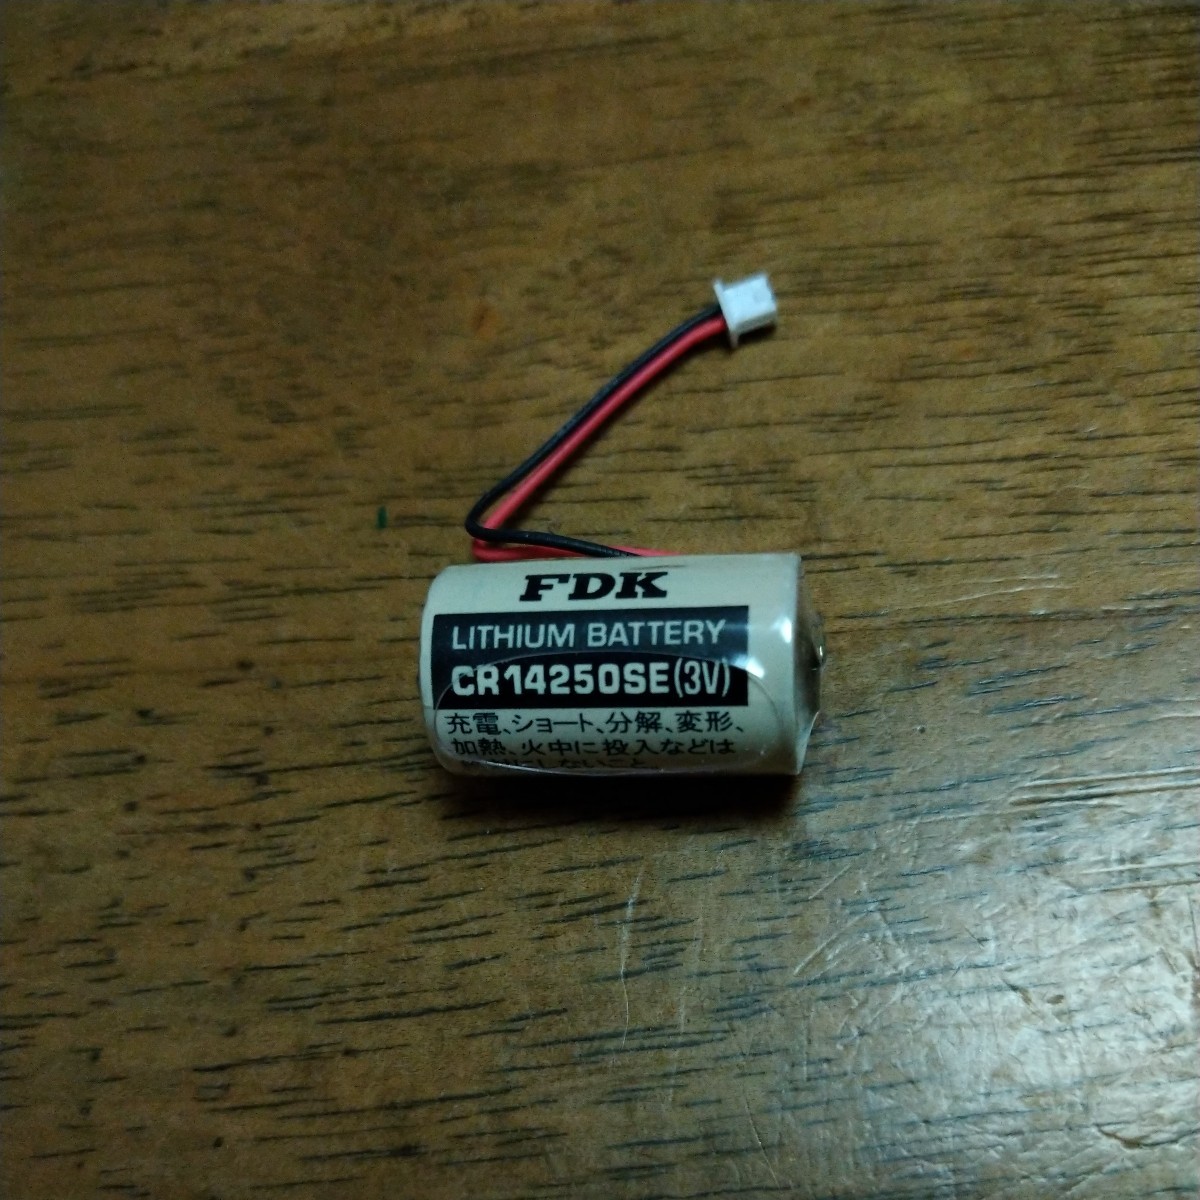 FDK CR14250SE(3V)バッテリー 端子付きです、新品未使用。の画像1